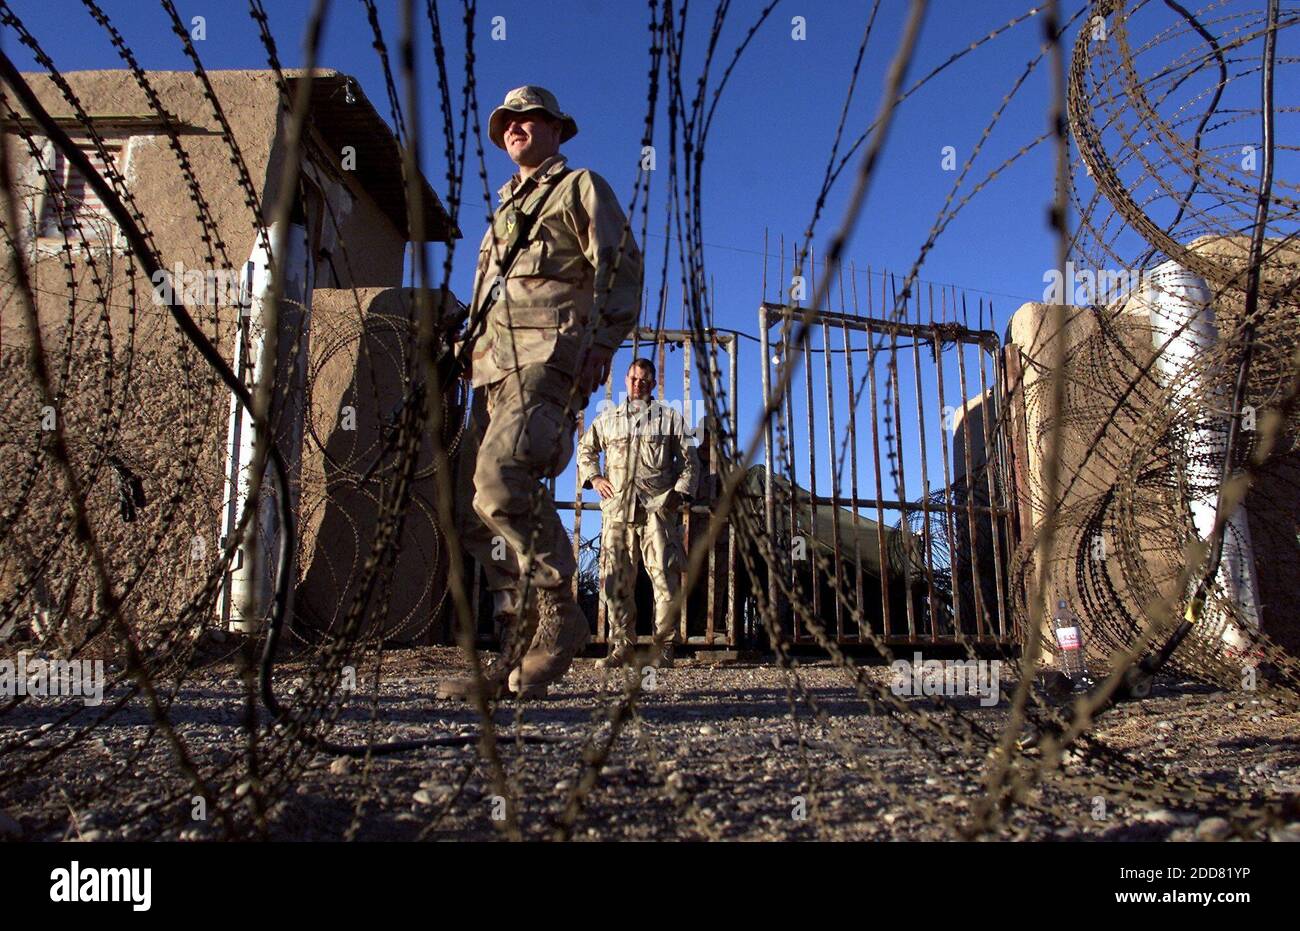 NESSUN FILM, NESSUN VIDEO, NESSUNA TV, NESSUN DOCUMENTARIO - i membri della 26a unità Marine Expeditionary stand guardia all'ingresso della nuova struttura di campo di battaglia detenuto presso l'aeroporto internazionale di Kandahar, a Kandahar, Afghanistan il 18 dicembre 2001. Anche se la protesta pubblica negli Stati Uniti e all'estero si è concentrata principalmente sugli abusi perpetrati dai detenuti presso la base navale degli Stati Uniti nella baia di Guantanamo, Cuba, E alla prigione di Abu Ghraib in Iraq, la violenza sadica è apparsa per la prima volta a Bagram e in un campo di internamento simile a quello degli Stati Uniti presso l'aeroporto di Kandahar, nell'Afghanistan meridionale. Foto di Tom Pennington/Fort Wort Foto Stock